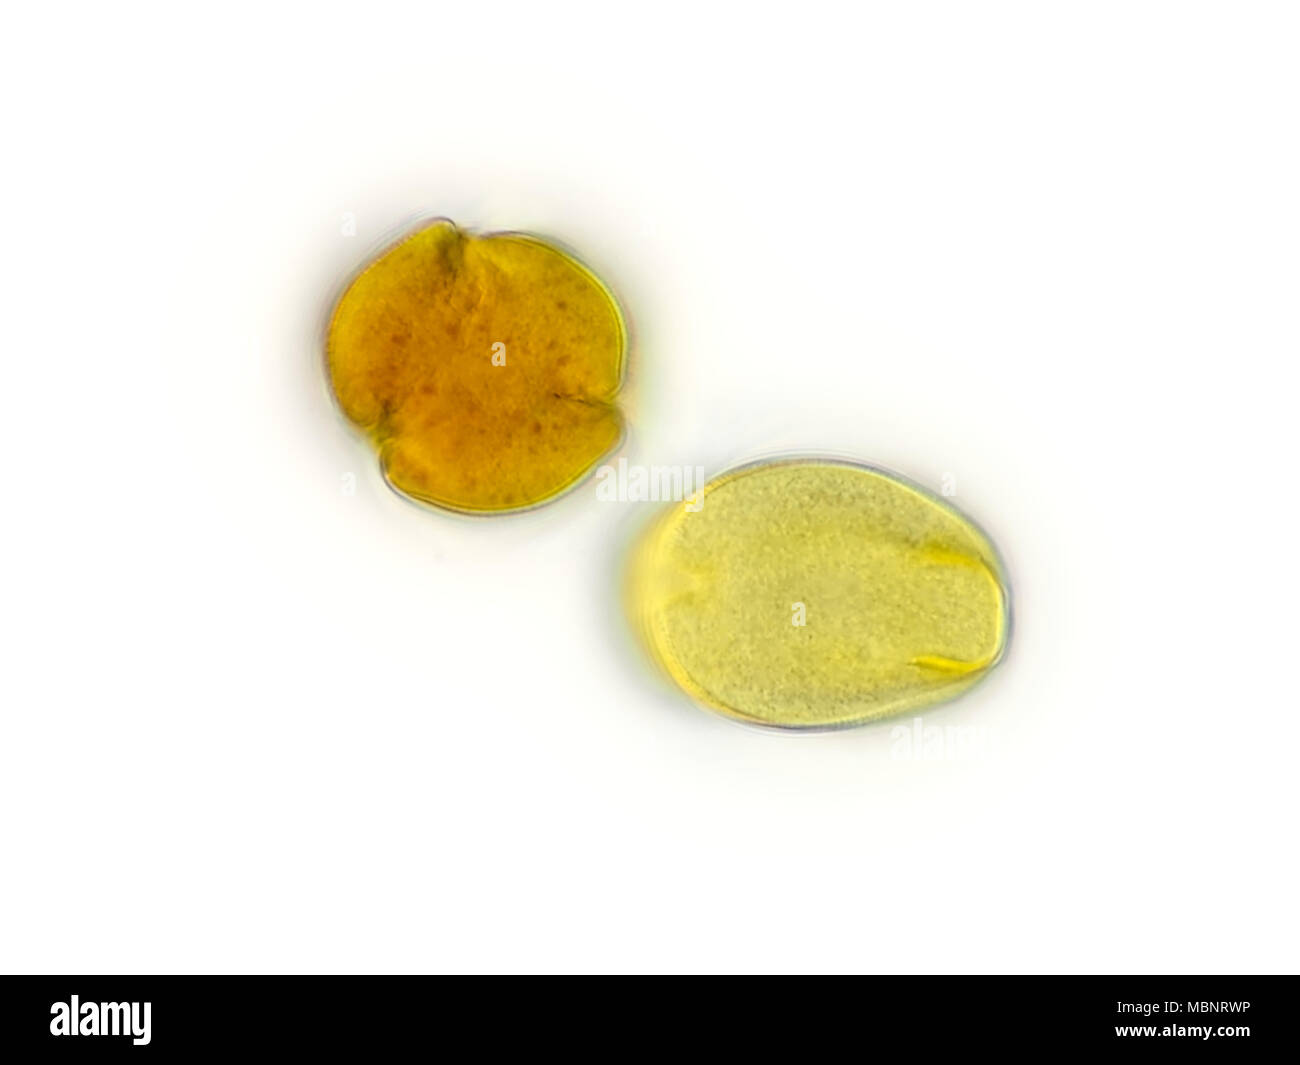 Micrografía de luz de 2 granos de polen orientadas de manera diferente (probablemente el polen de los árboles frutales) a partir de una muestra de aire, foto de superficie es de unos 170 micrones de ancho Foto de stock